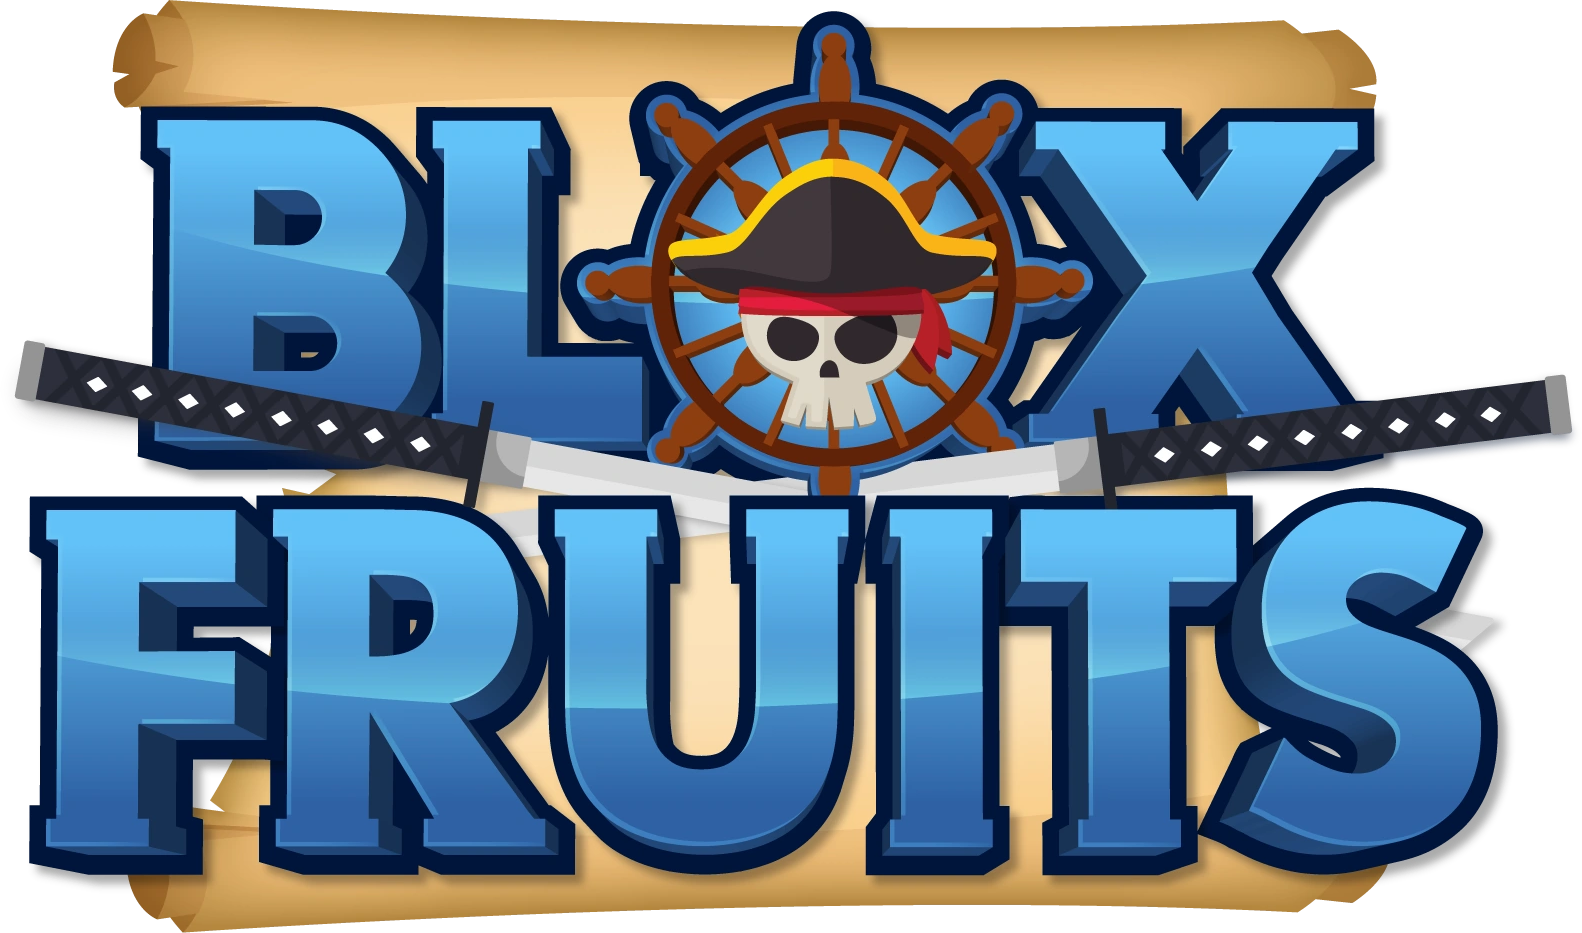 blox fruit  Fruit logo, Fruit wallpaper, Fruit icons